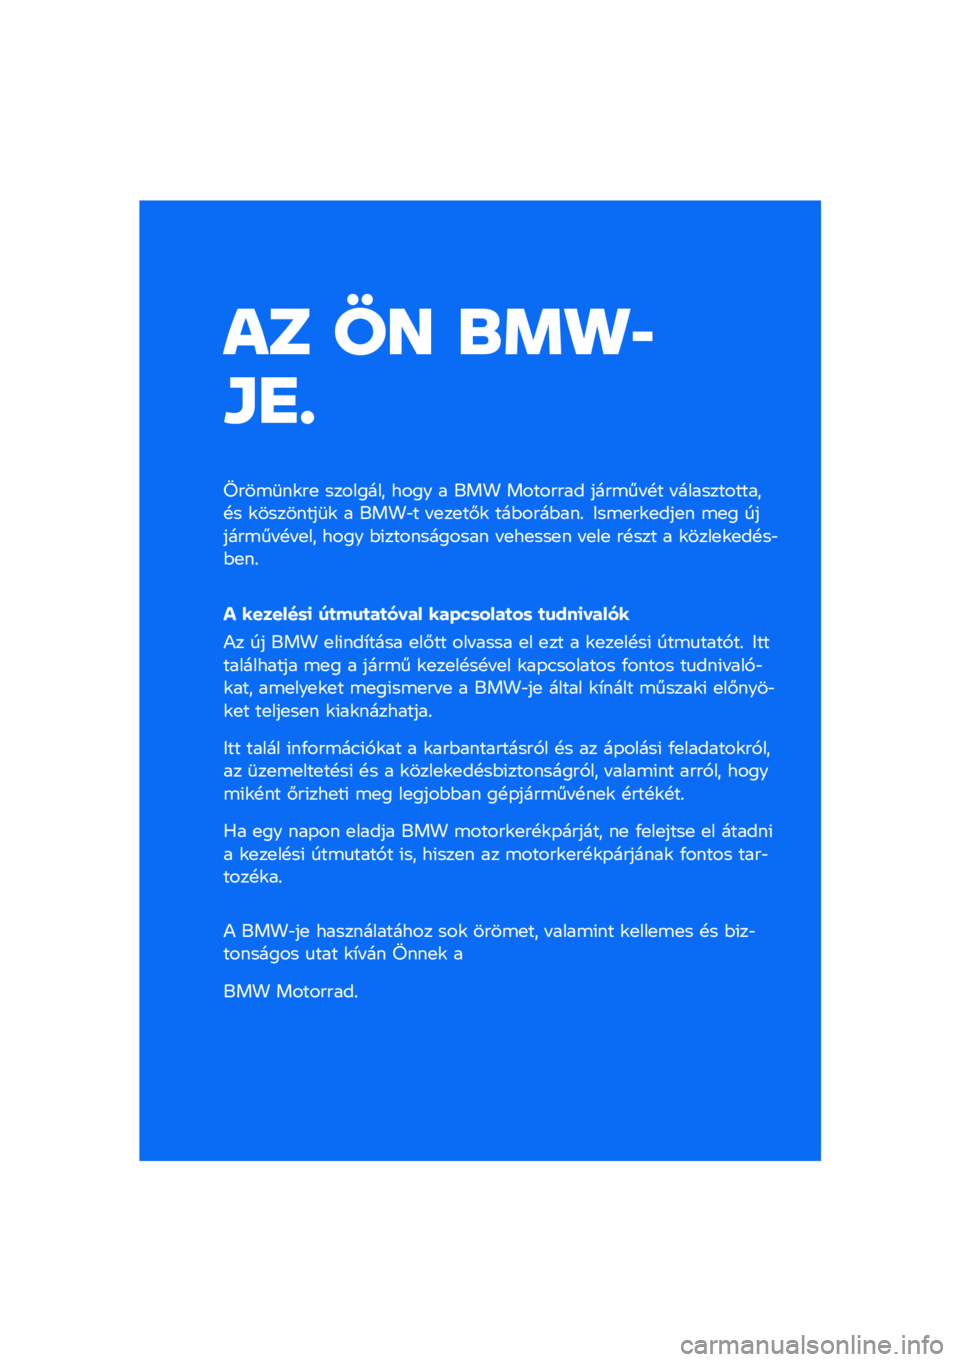 BMW MOTORRAD F 750 GS 2020  Kezelési útmutató (in Hungarian) �� �� �\b�	�
�
�\f�
�
����\b�	��\f��
 �������� ���� � ��� �������� ����\b�� �!� � ������������!� �\f��������	�\f � ����"� � �
��
��#�\